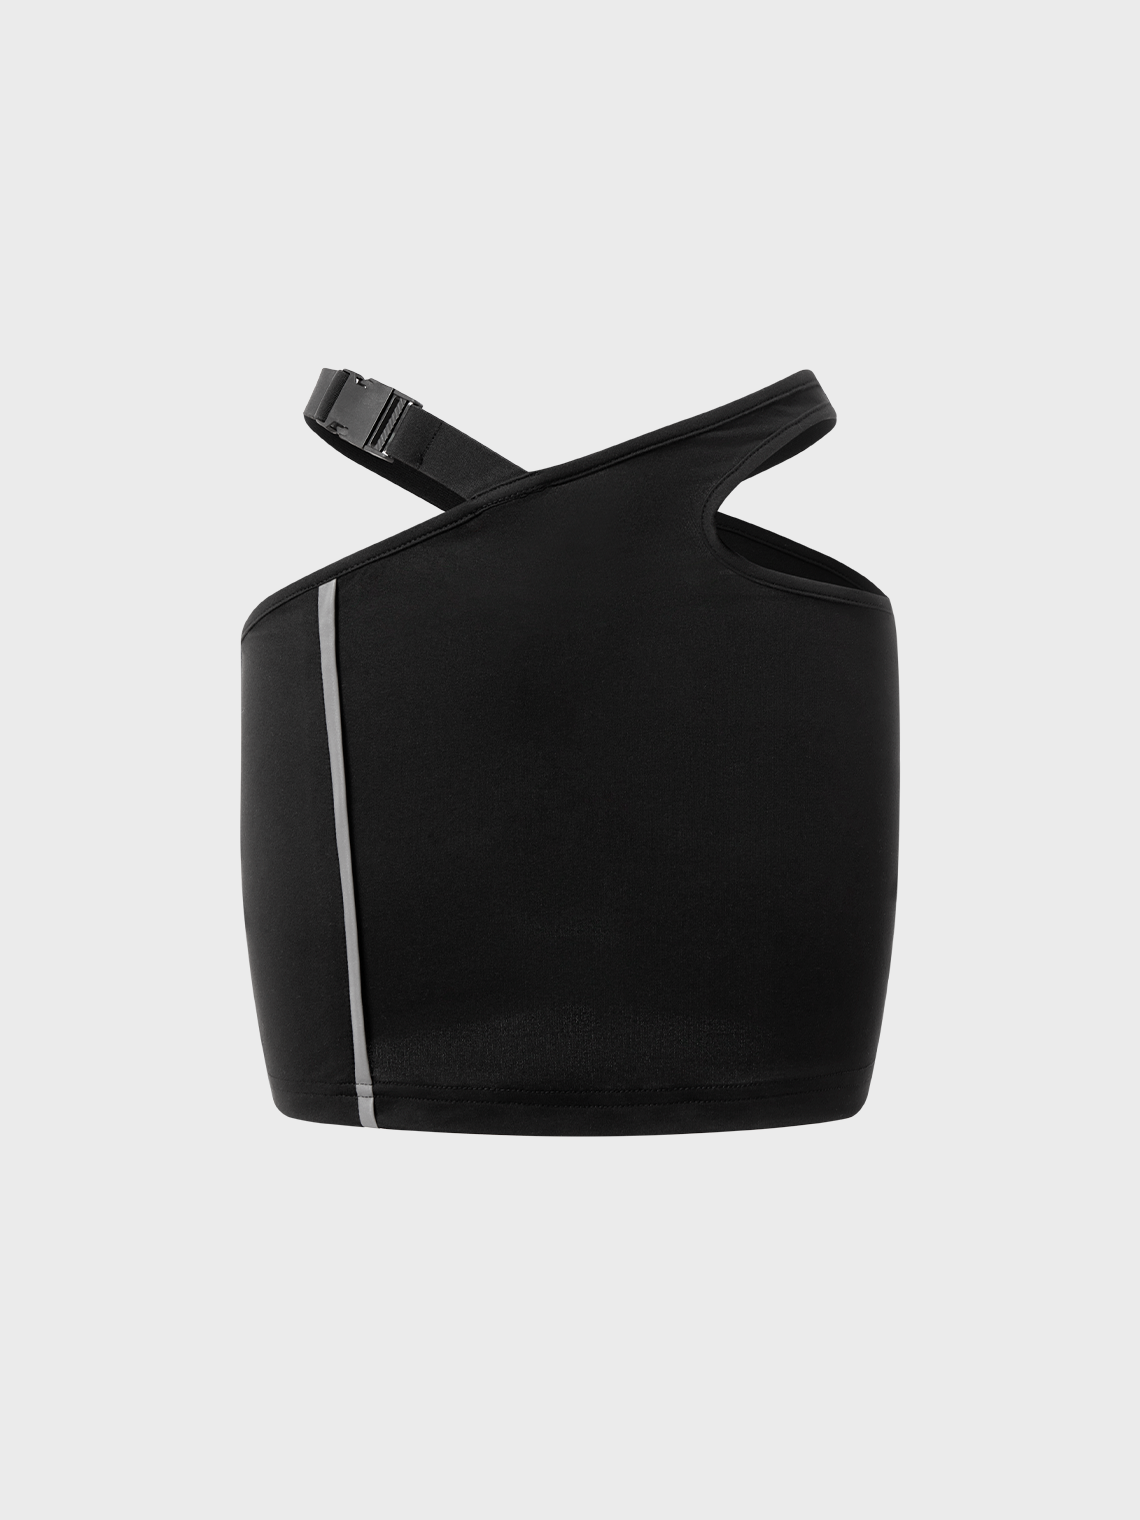 【Final Sale】Street Black 3M Asymmetrical Design Cyberpunk Bottom Skirt